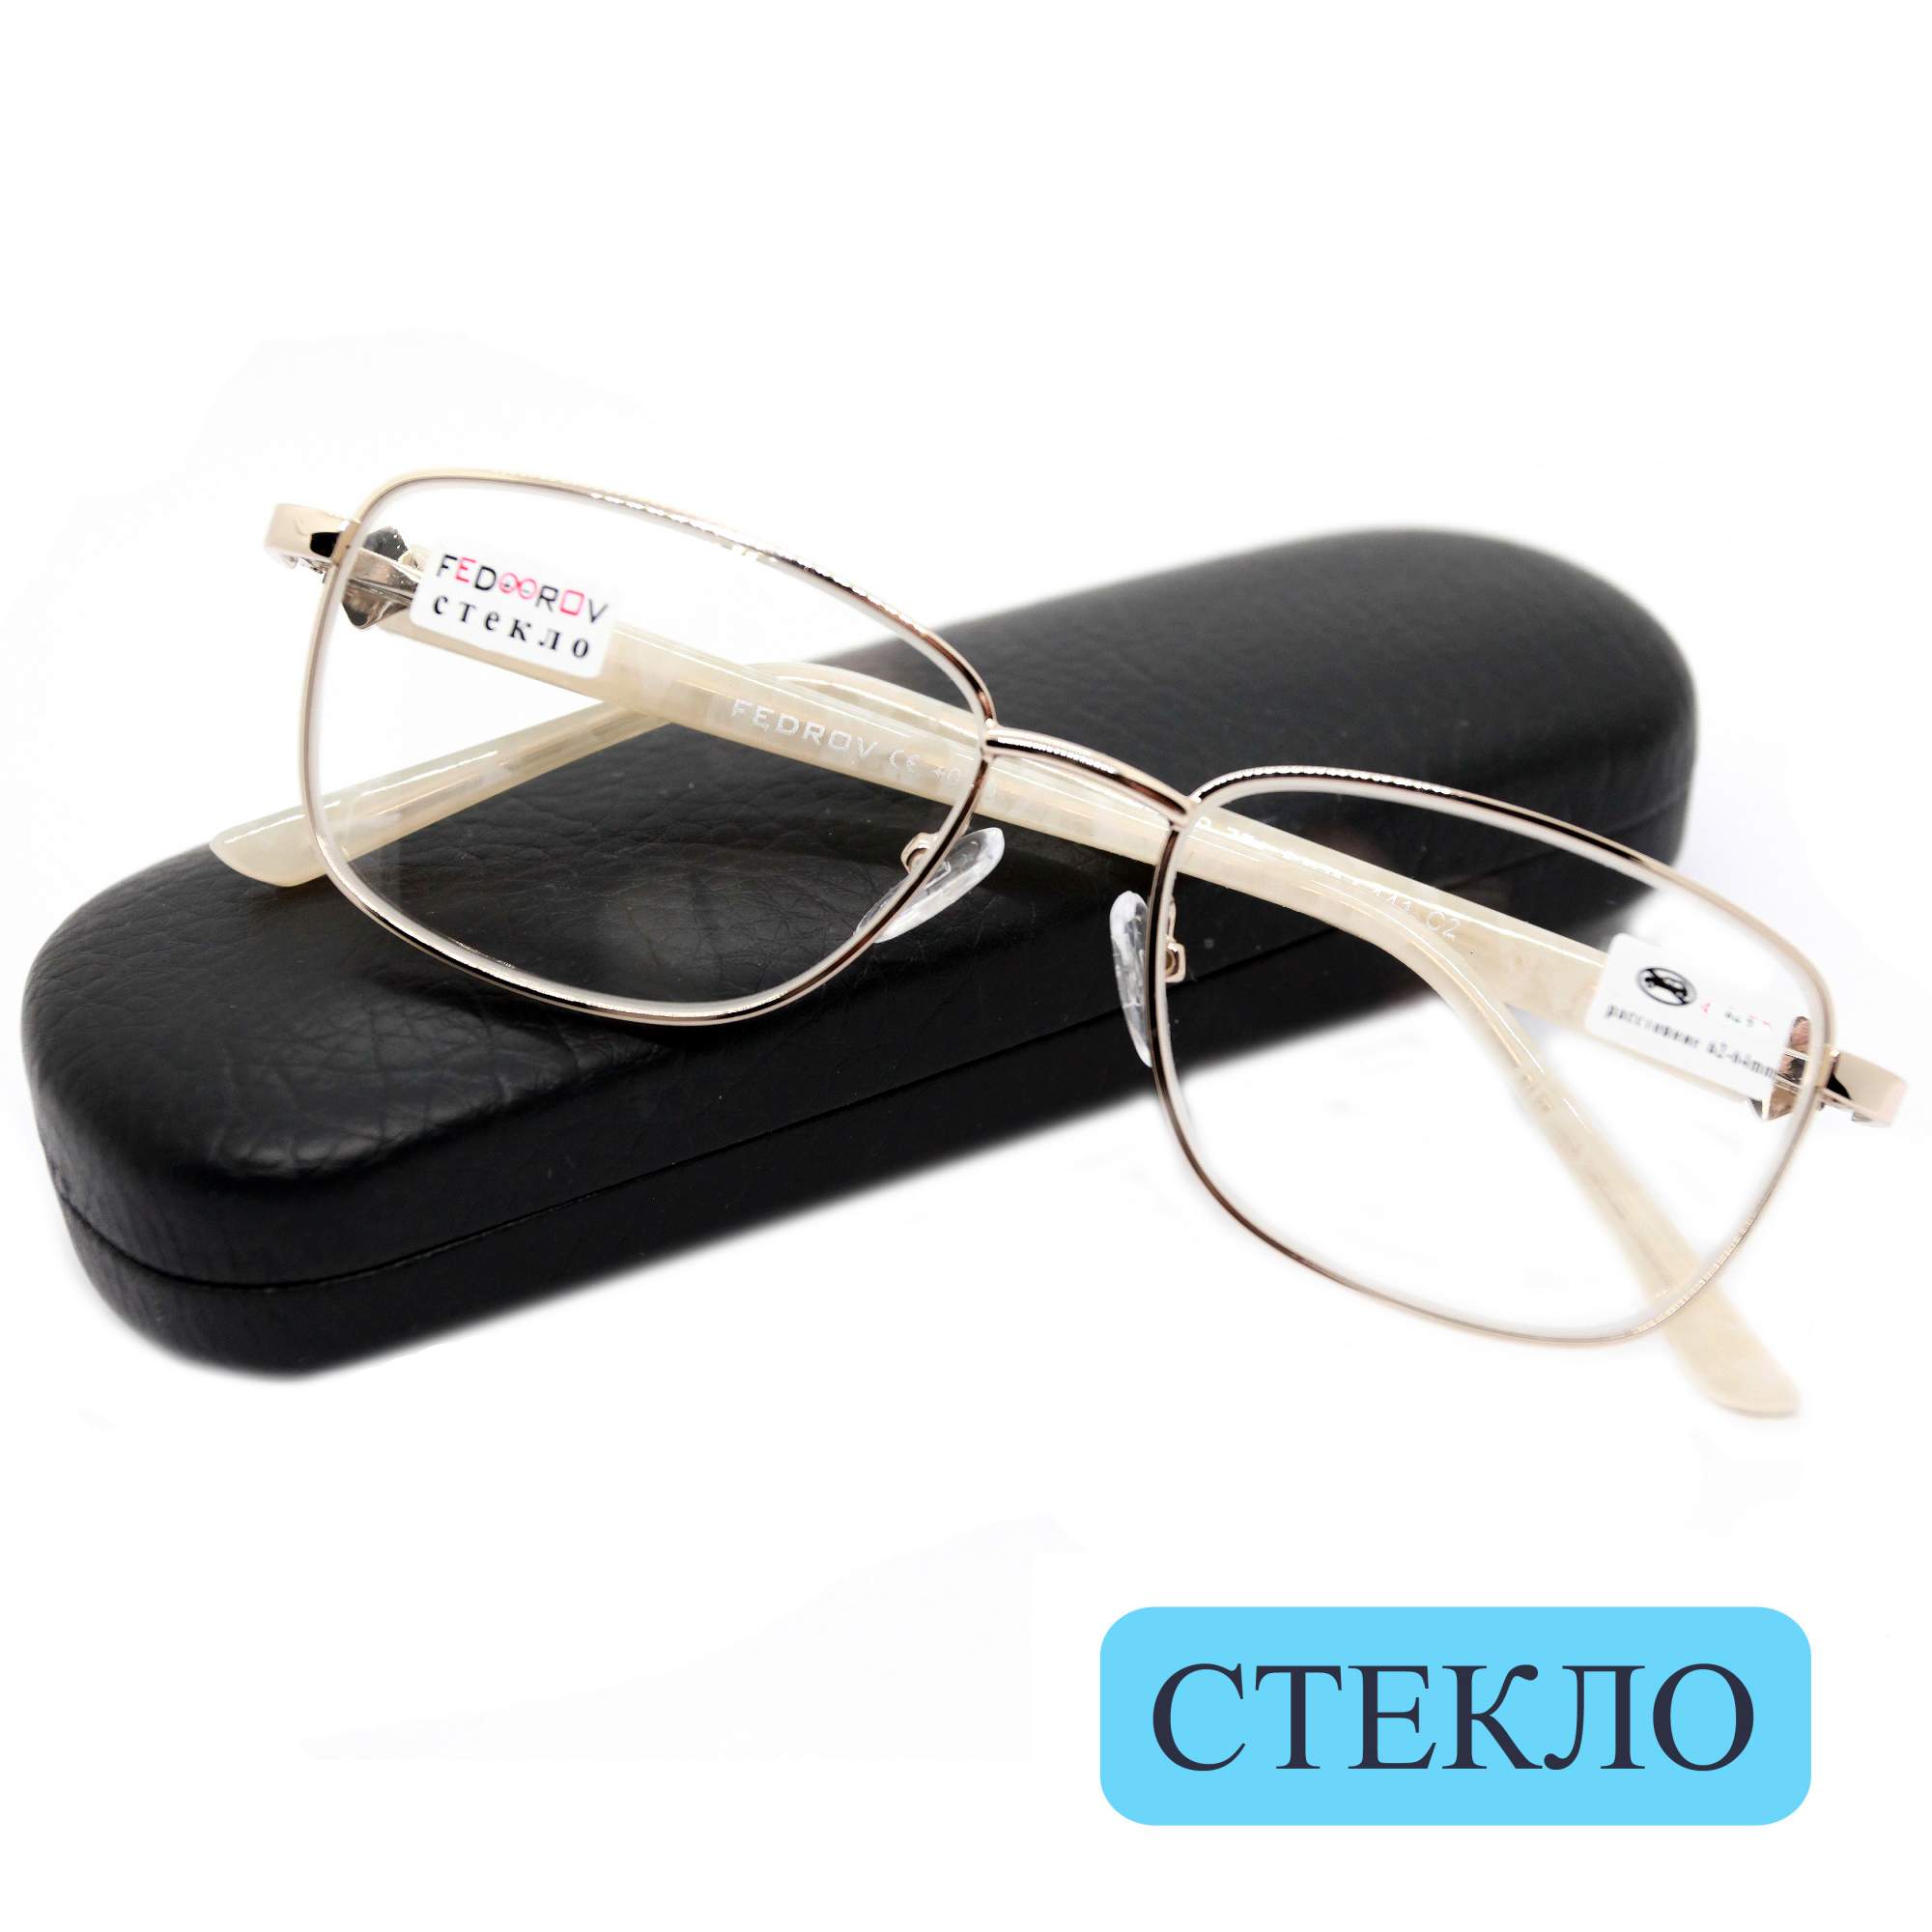 Готовые очки Fedrov 771, со стеклянной линзой, +2.00, c футляром, цвет золотой, РЦ 62-64